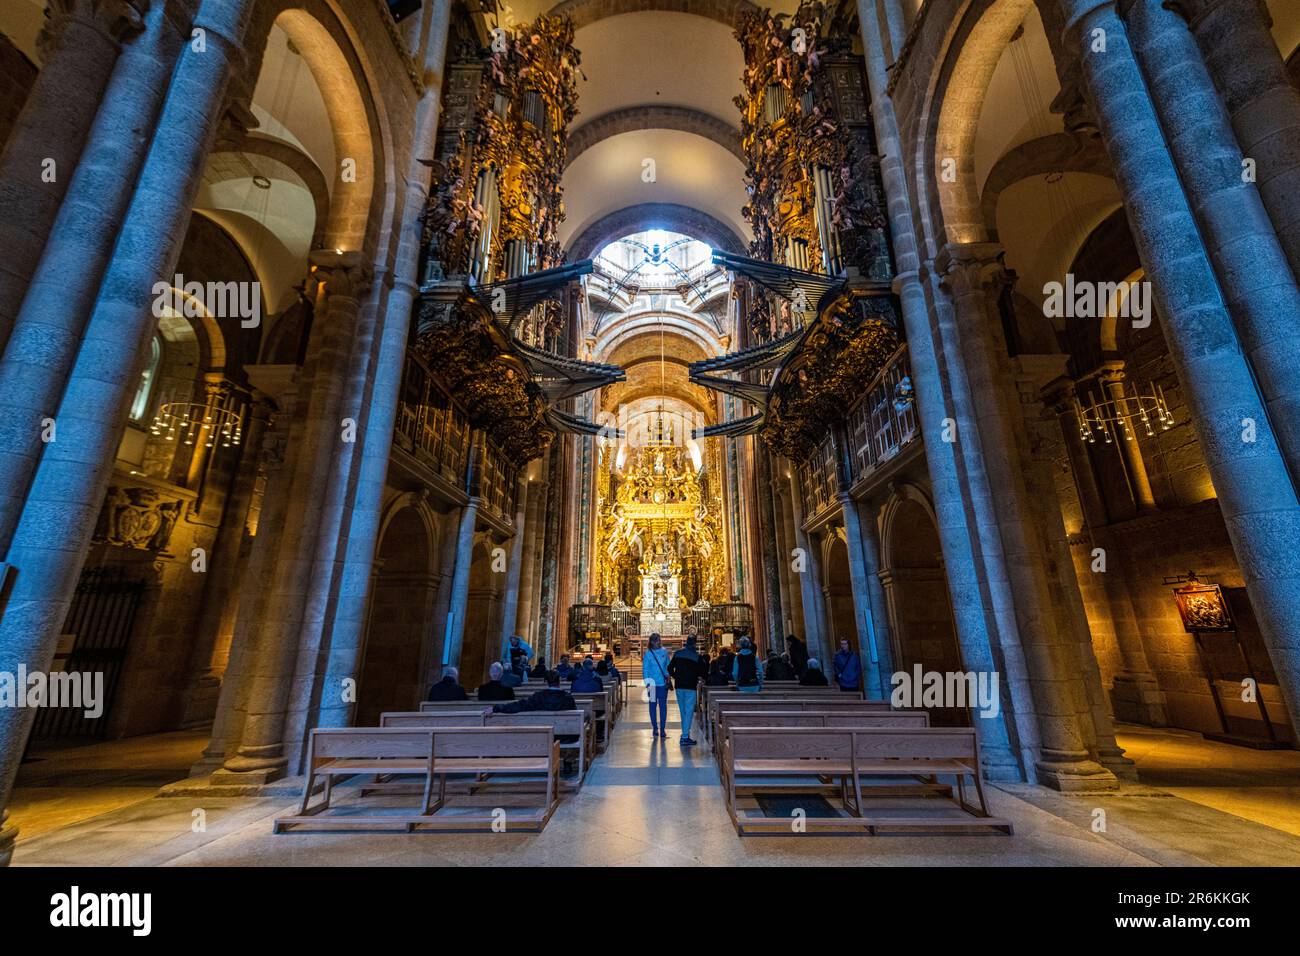 Intérieur de la cathédrale, Saint-Jacques-de-Compostelle, site classé au patrimoine mondial de l'UNESCO, Galice, Espagne, Europe Banque D'Images